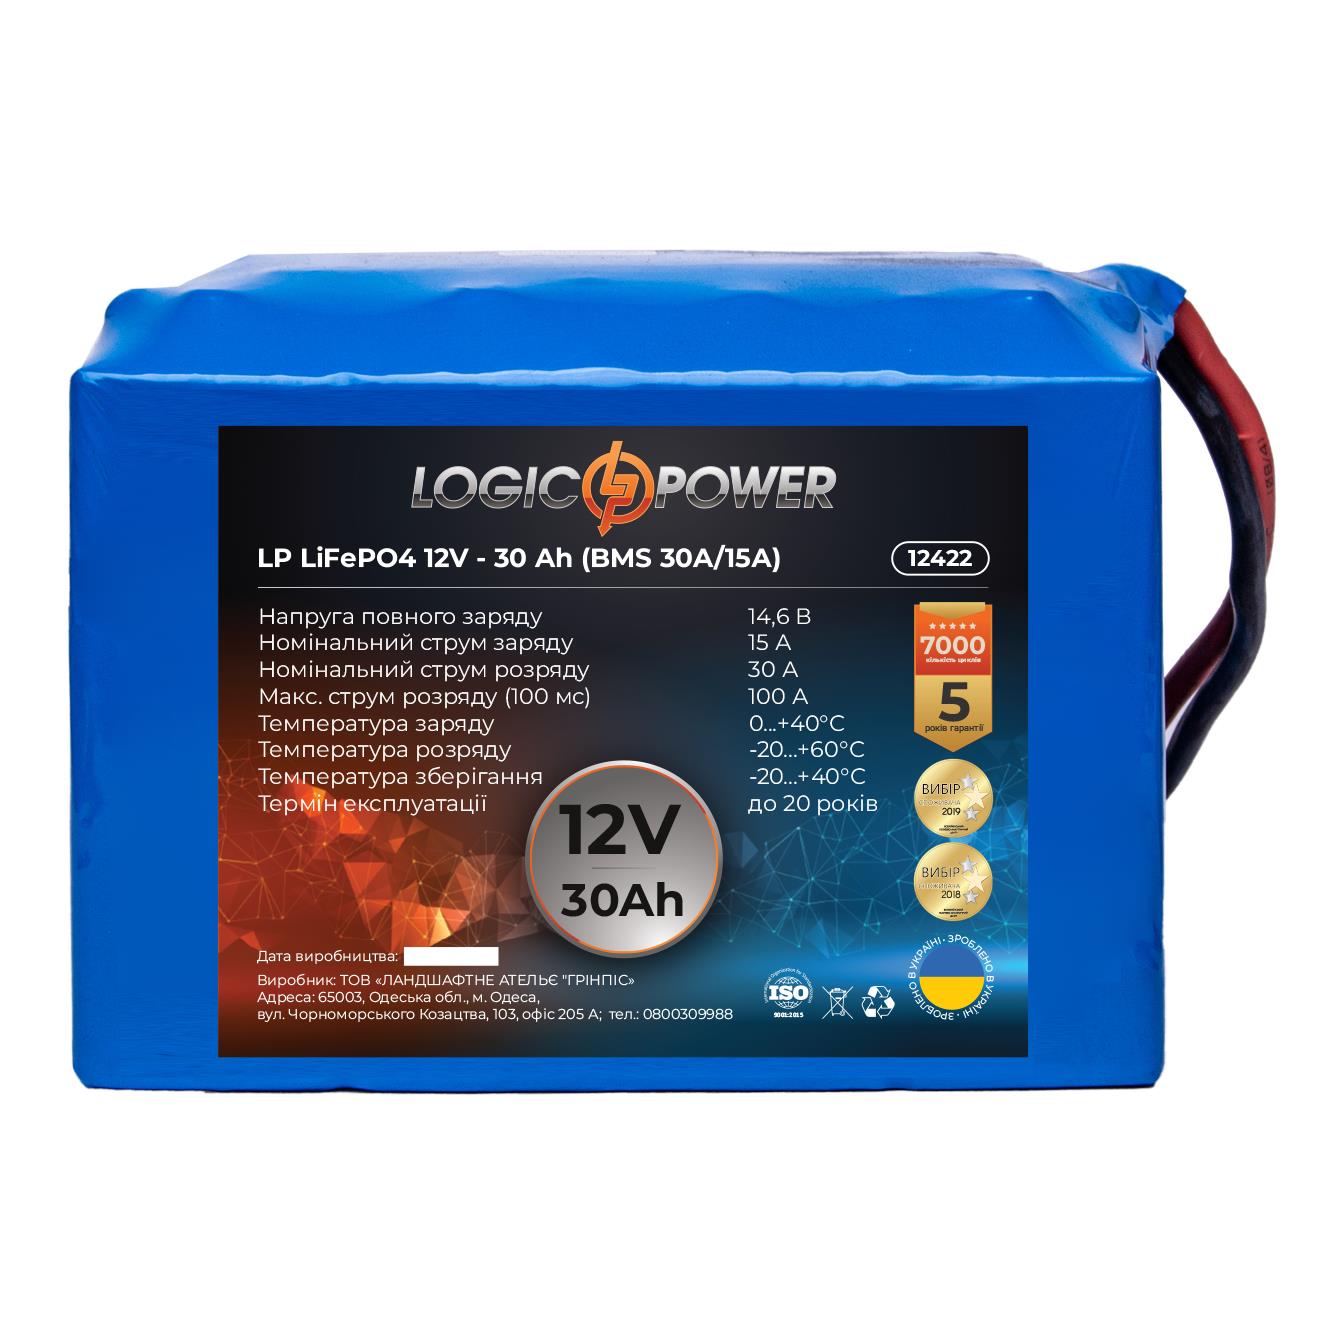 Аккумулятор литий-железо-фосфатный LogicPower LP LiFePO4 12V - 30 Ah (BMS 30A/15А) (12422) в интернет-магазине, главное фото